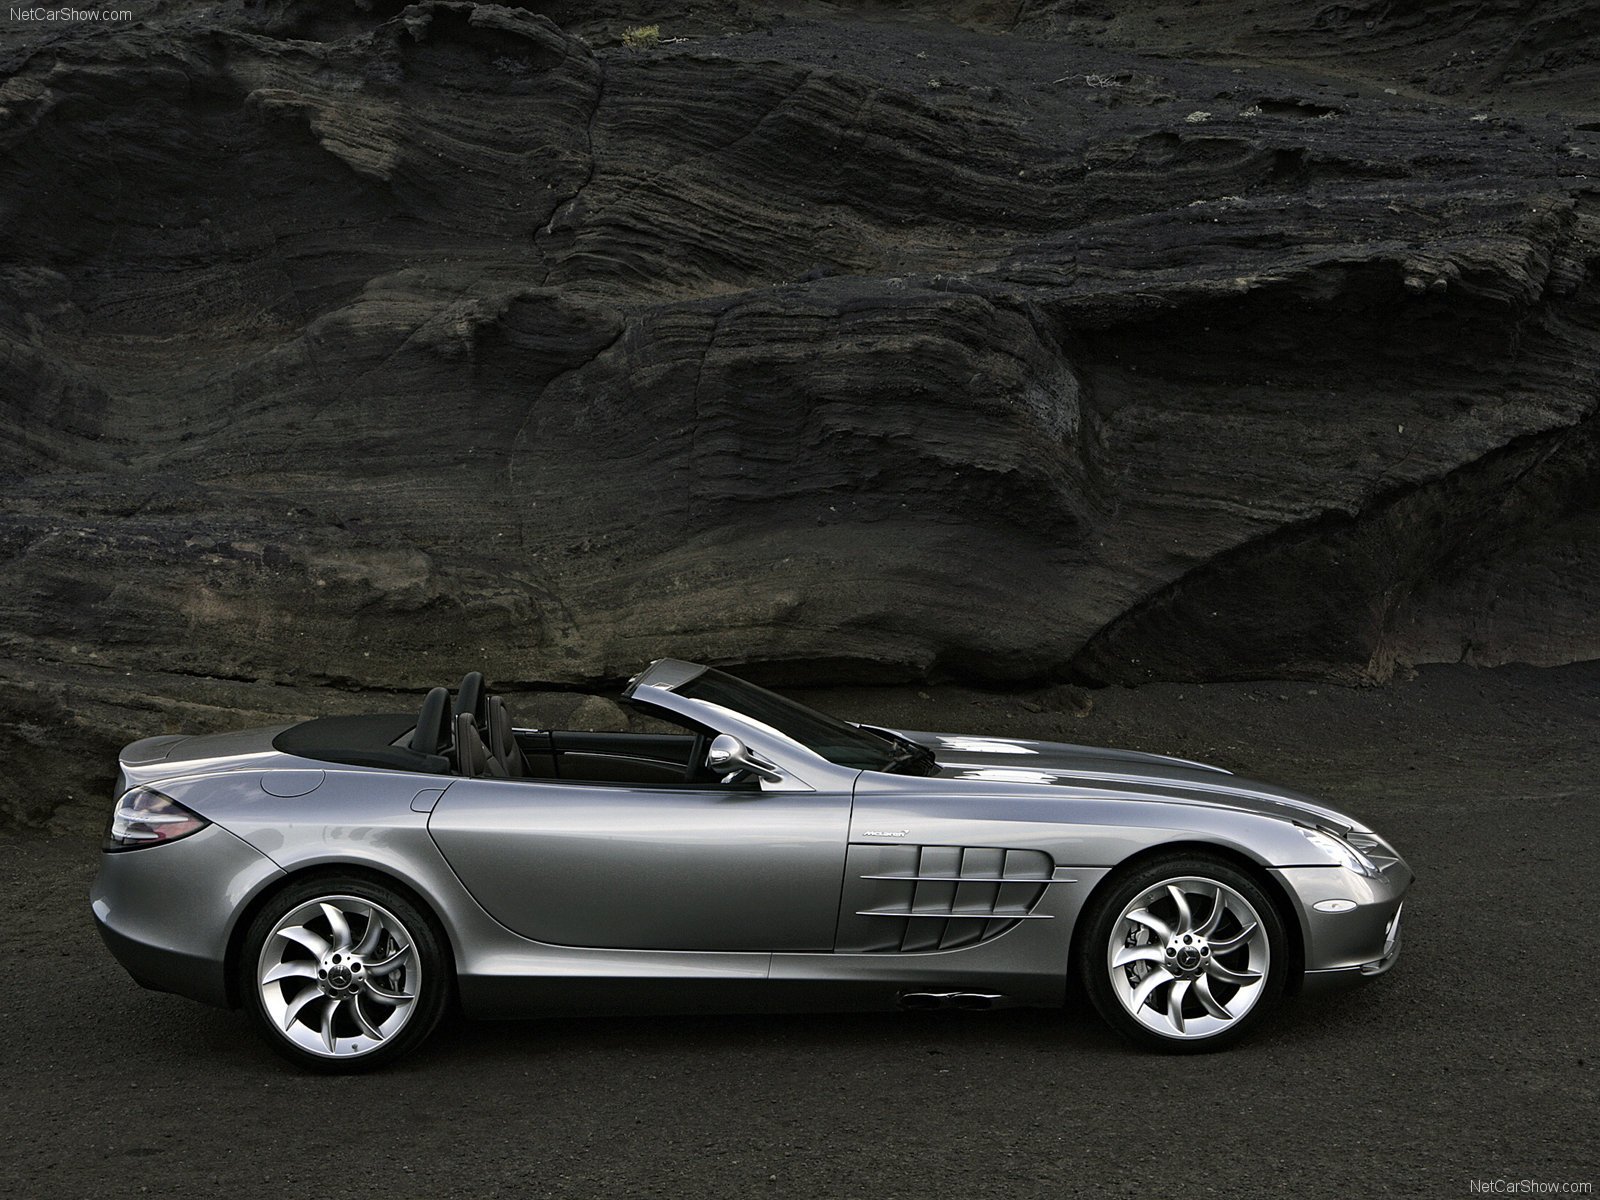 2008, Benz, Mclaren, Mercedes, R199, Roadster, Slr, Supercar Wallpaper